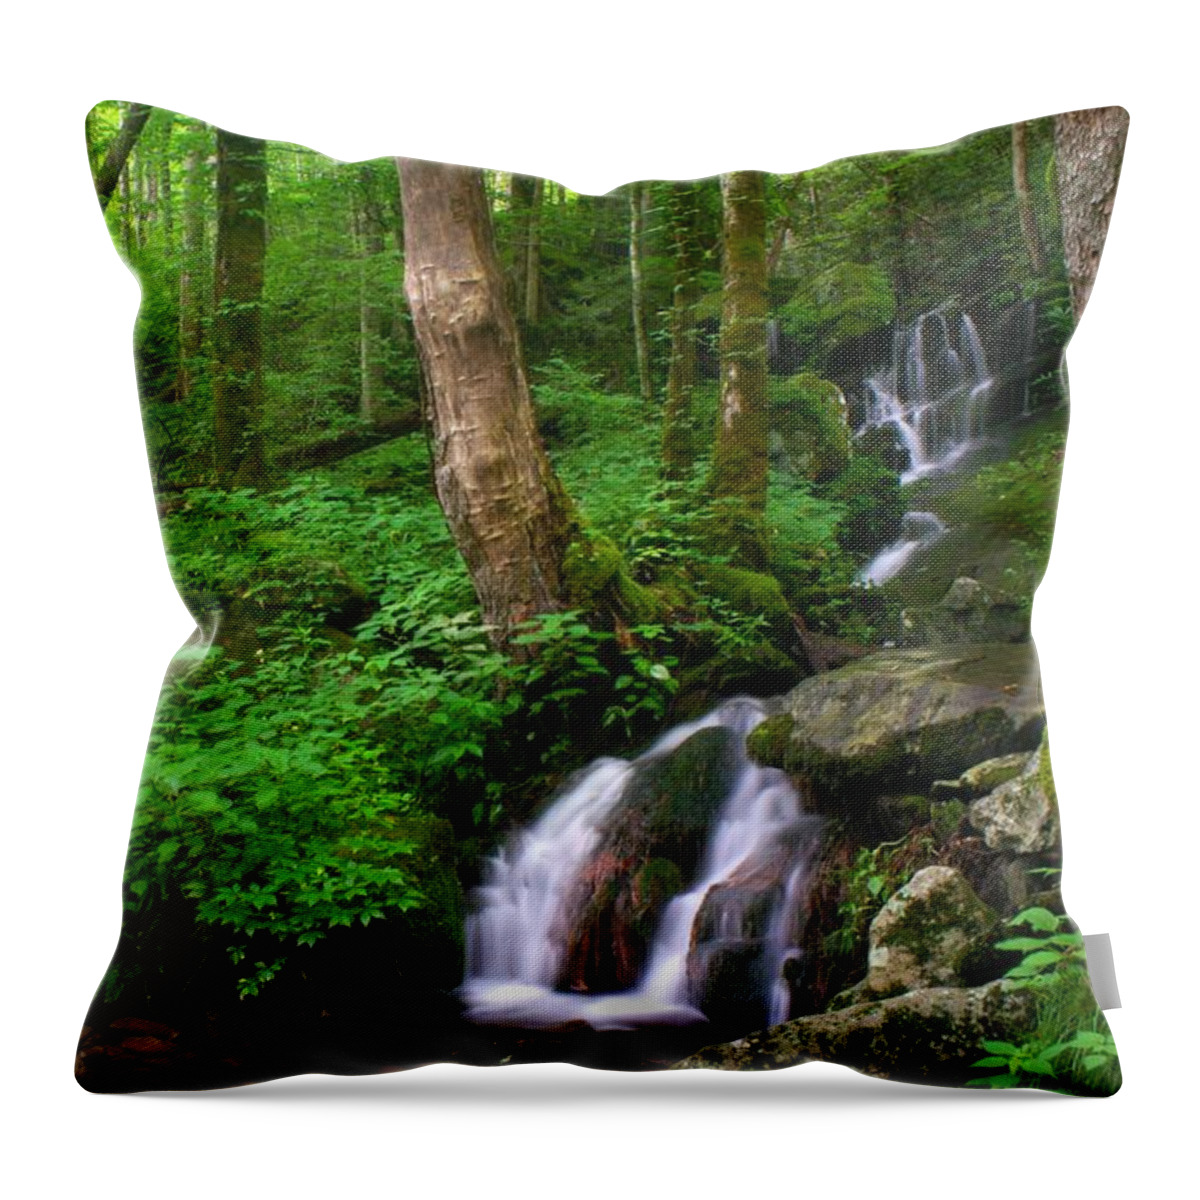 Nunweiler Throw Pillow featuring the photograph Big Hollow Creek Cascade by Nunweiler Photography